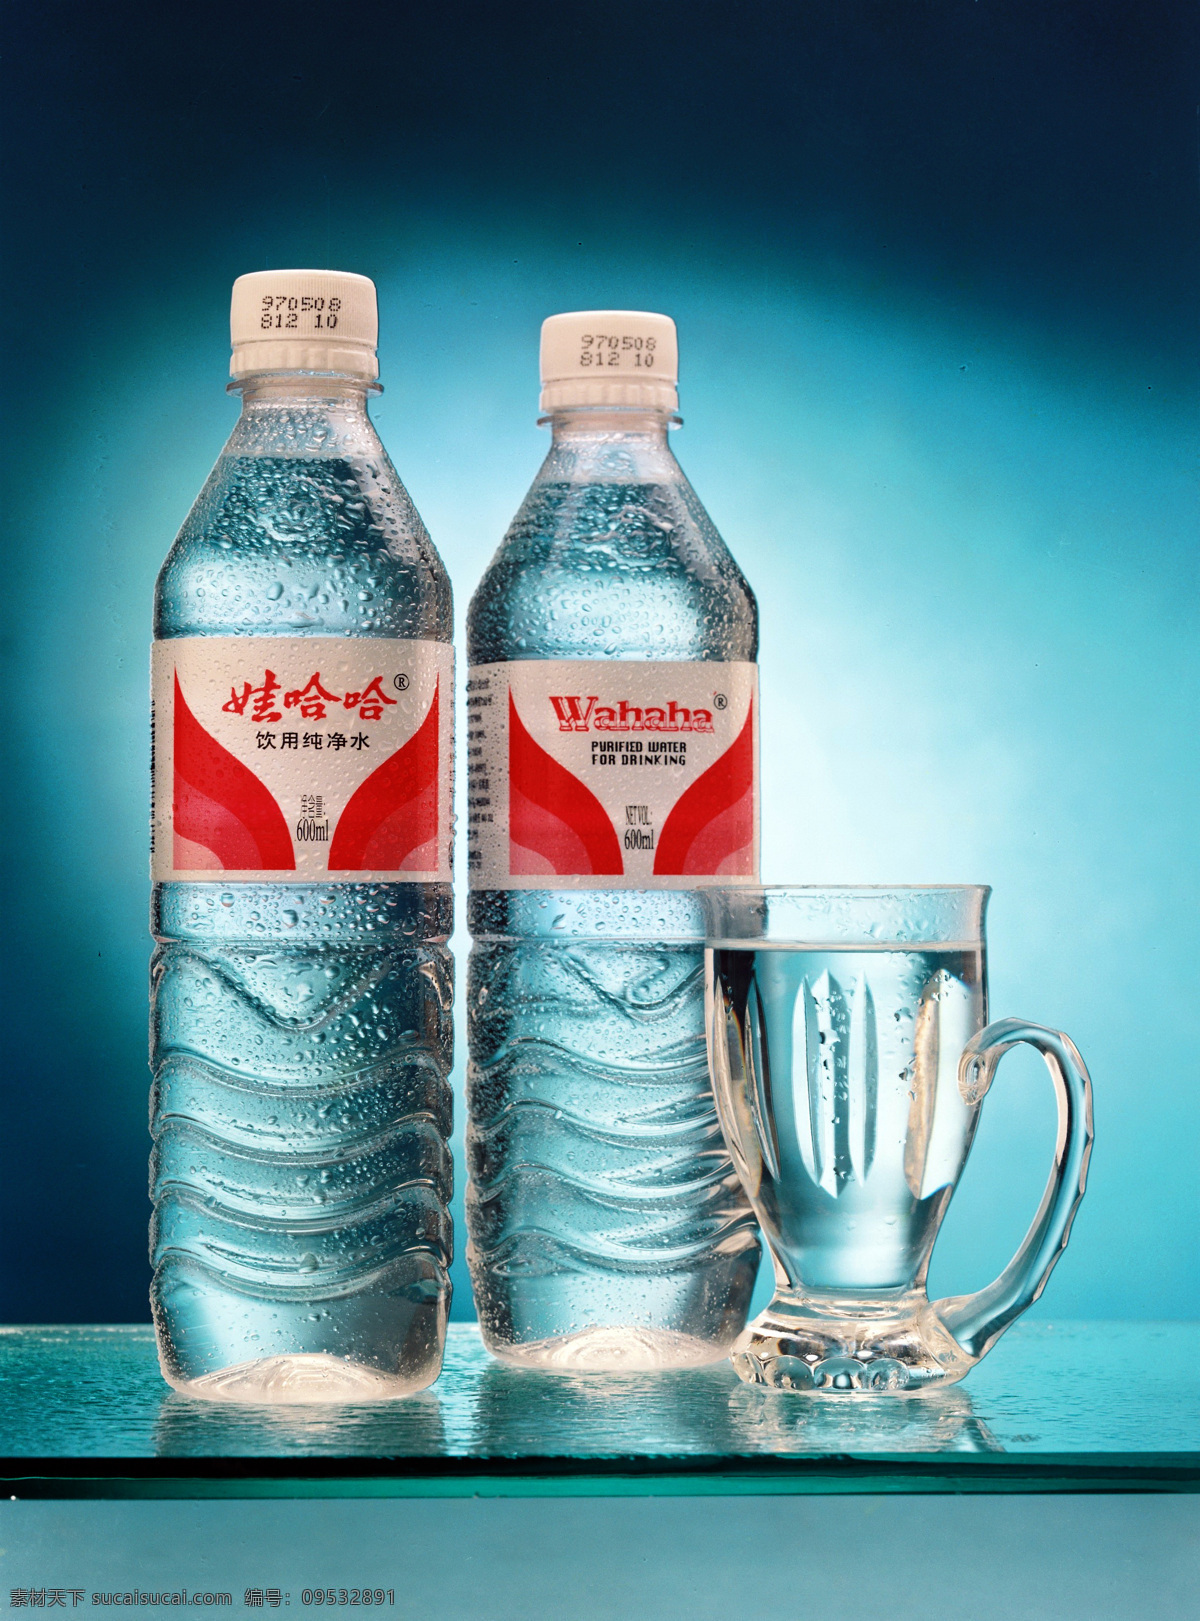 娃哈哈矿泉水 瓶装水 水瓶 纯净水 饮用水 水 饮料 餐饮美食 饮料酒水